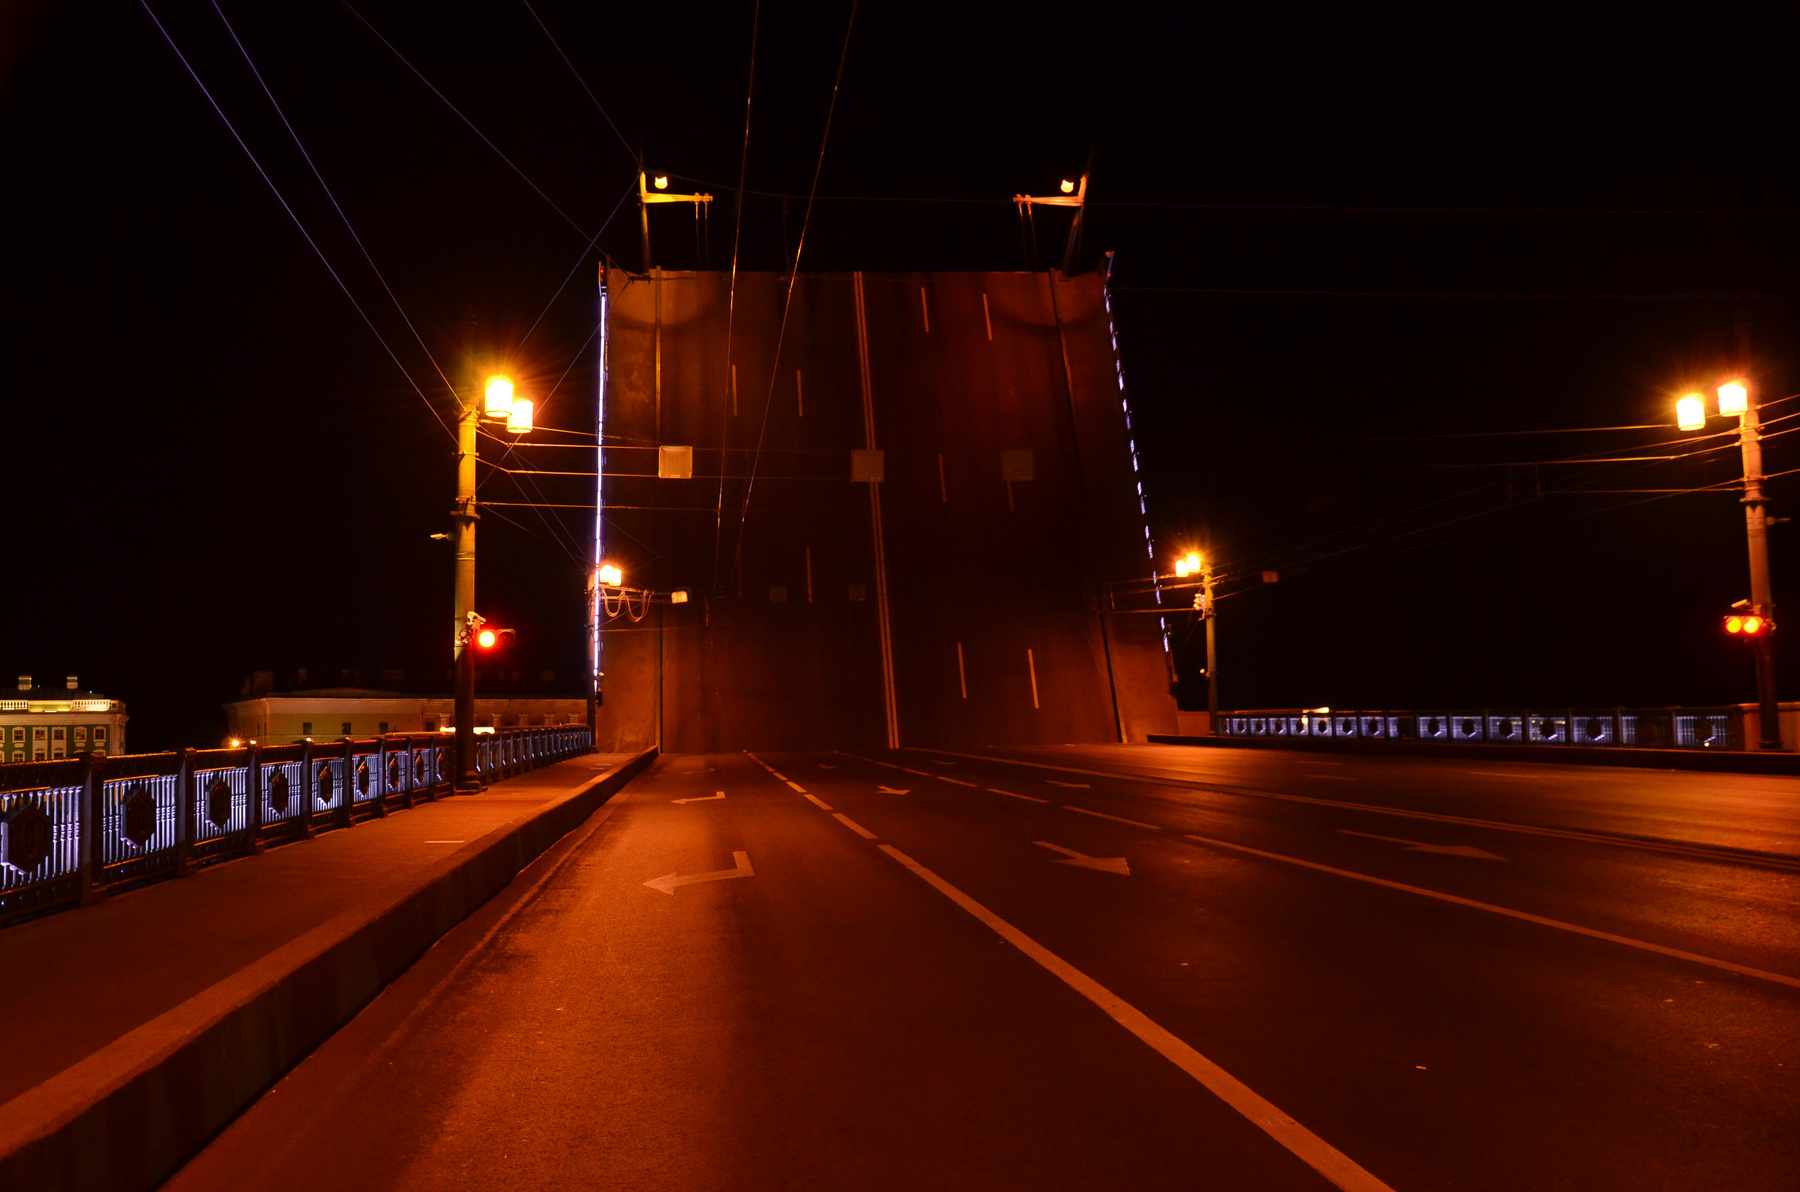 Спокойной ночи! Мост разводной мост фонари спокойной ночи спать закрыто